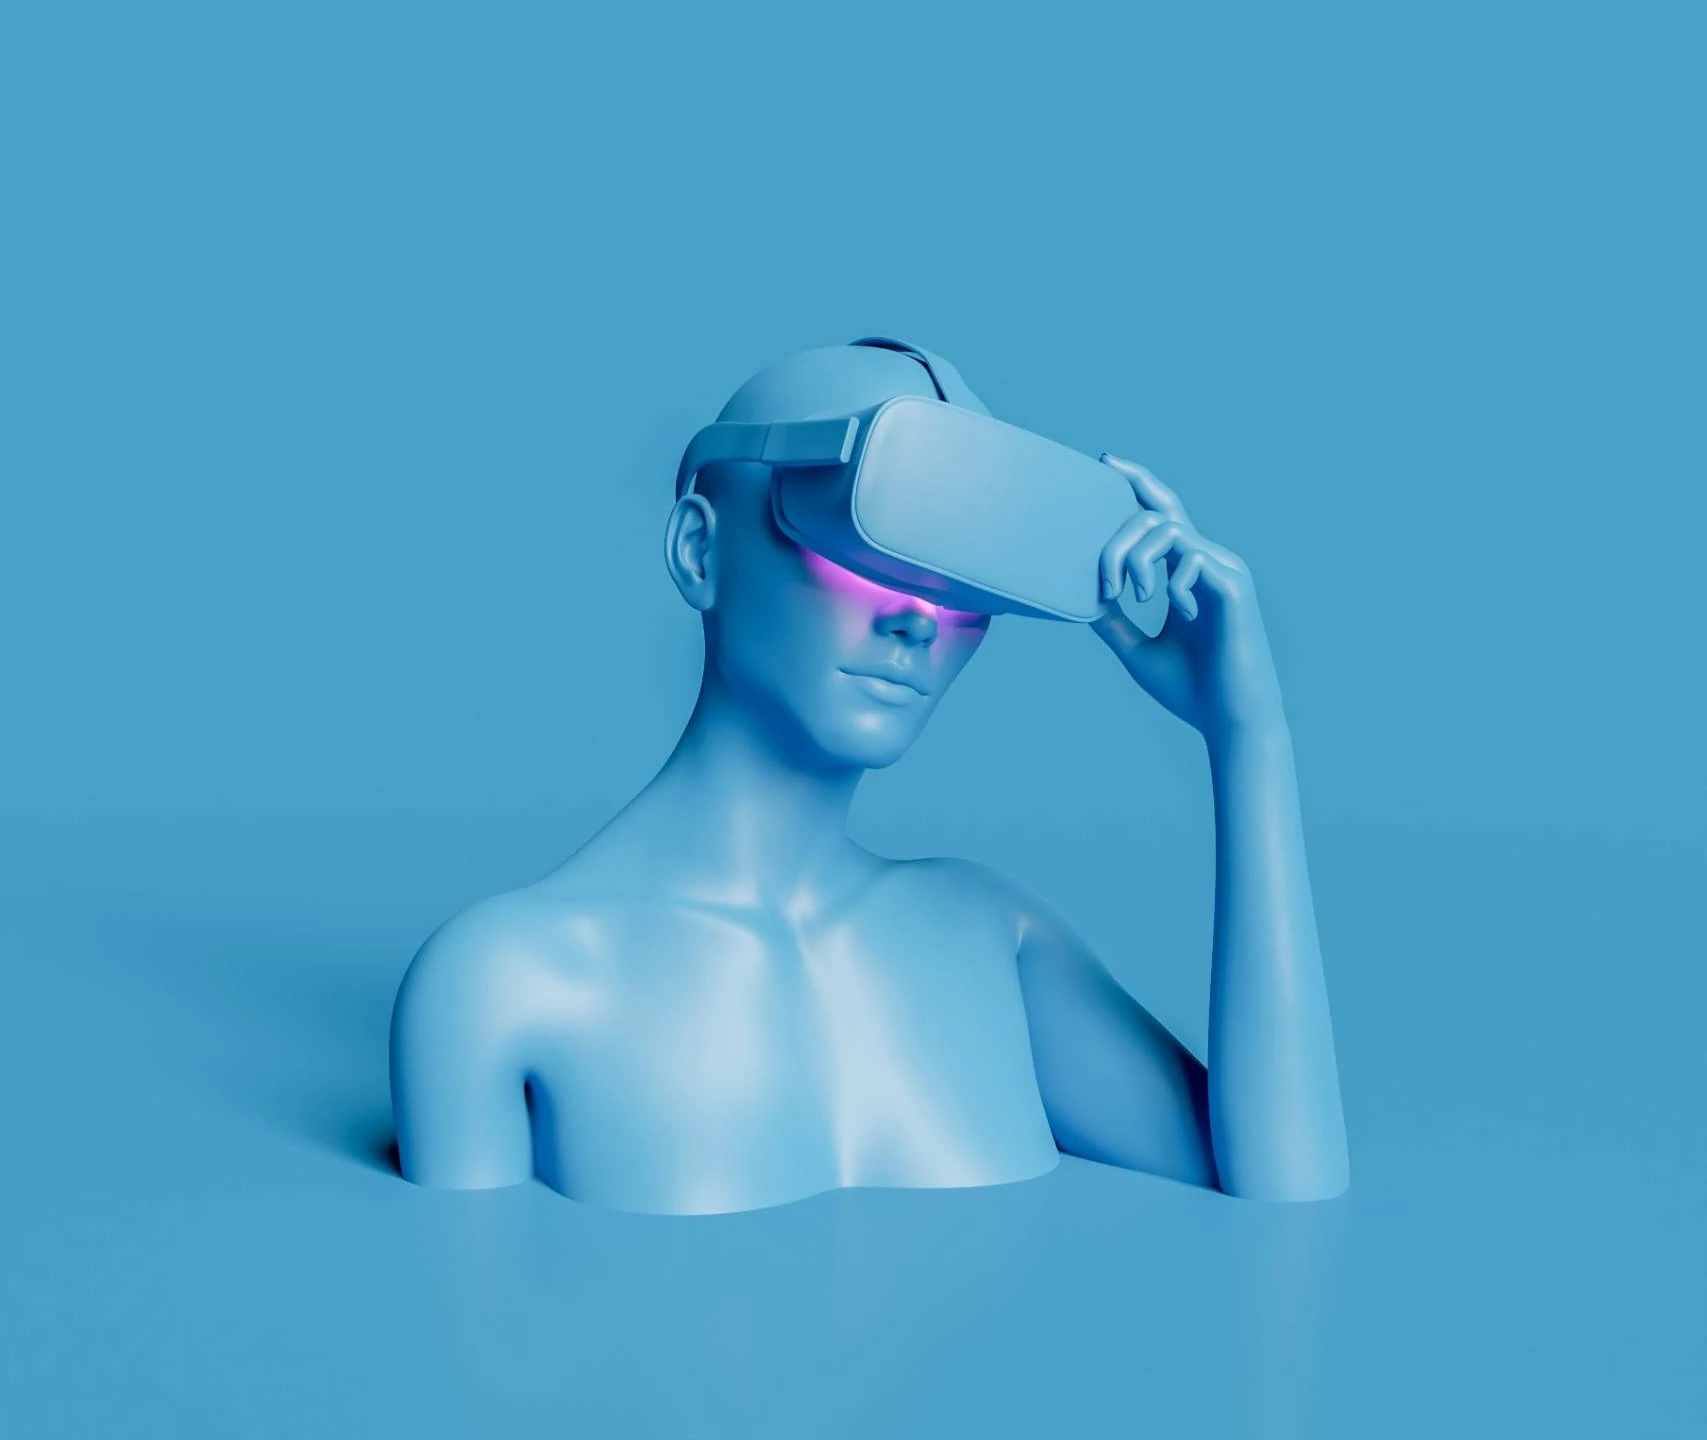 Modelbild einer Schaufensterpuppe mit VR Brille in blau